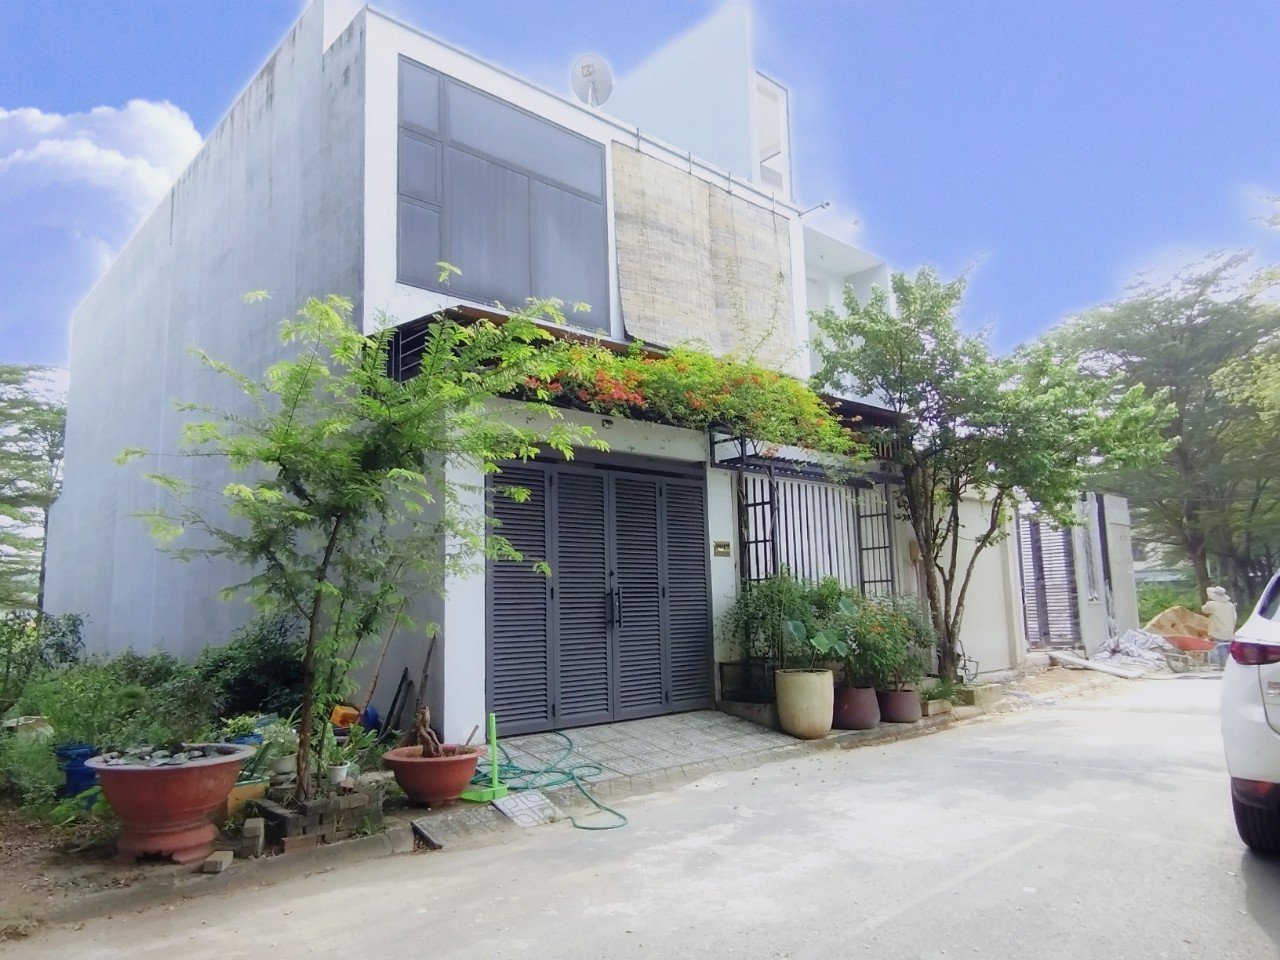 Cần bán đất nền nhà phố và biệt thự giá tốt, thuộc KDC Thời báo kinh tế, Phú Hữu, quận 9 4